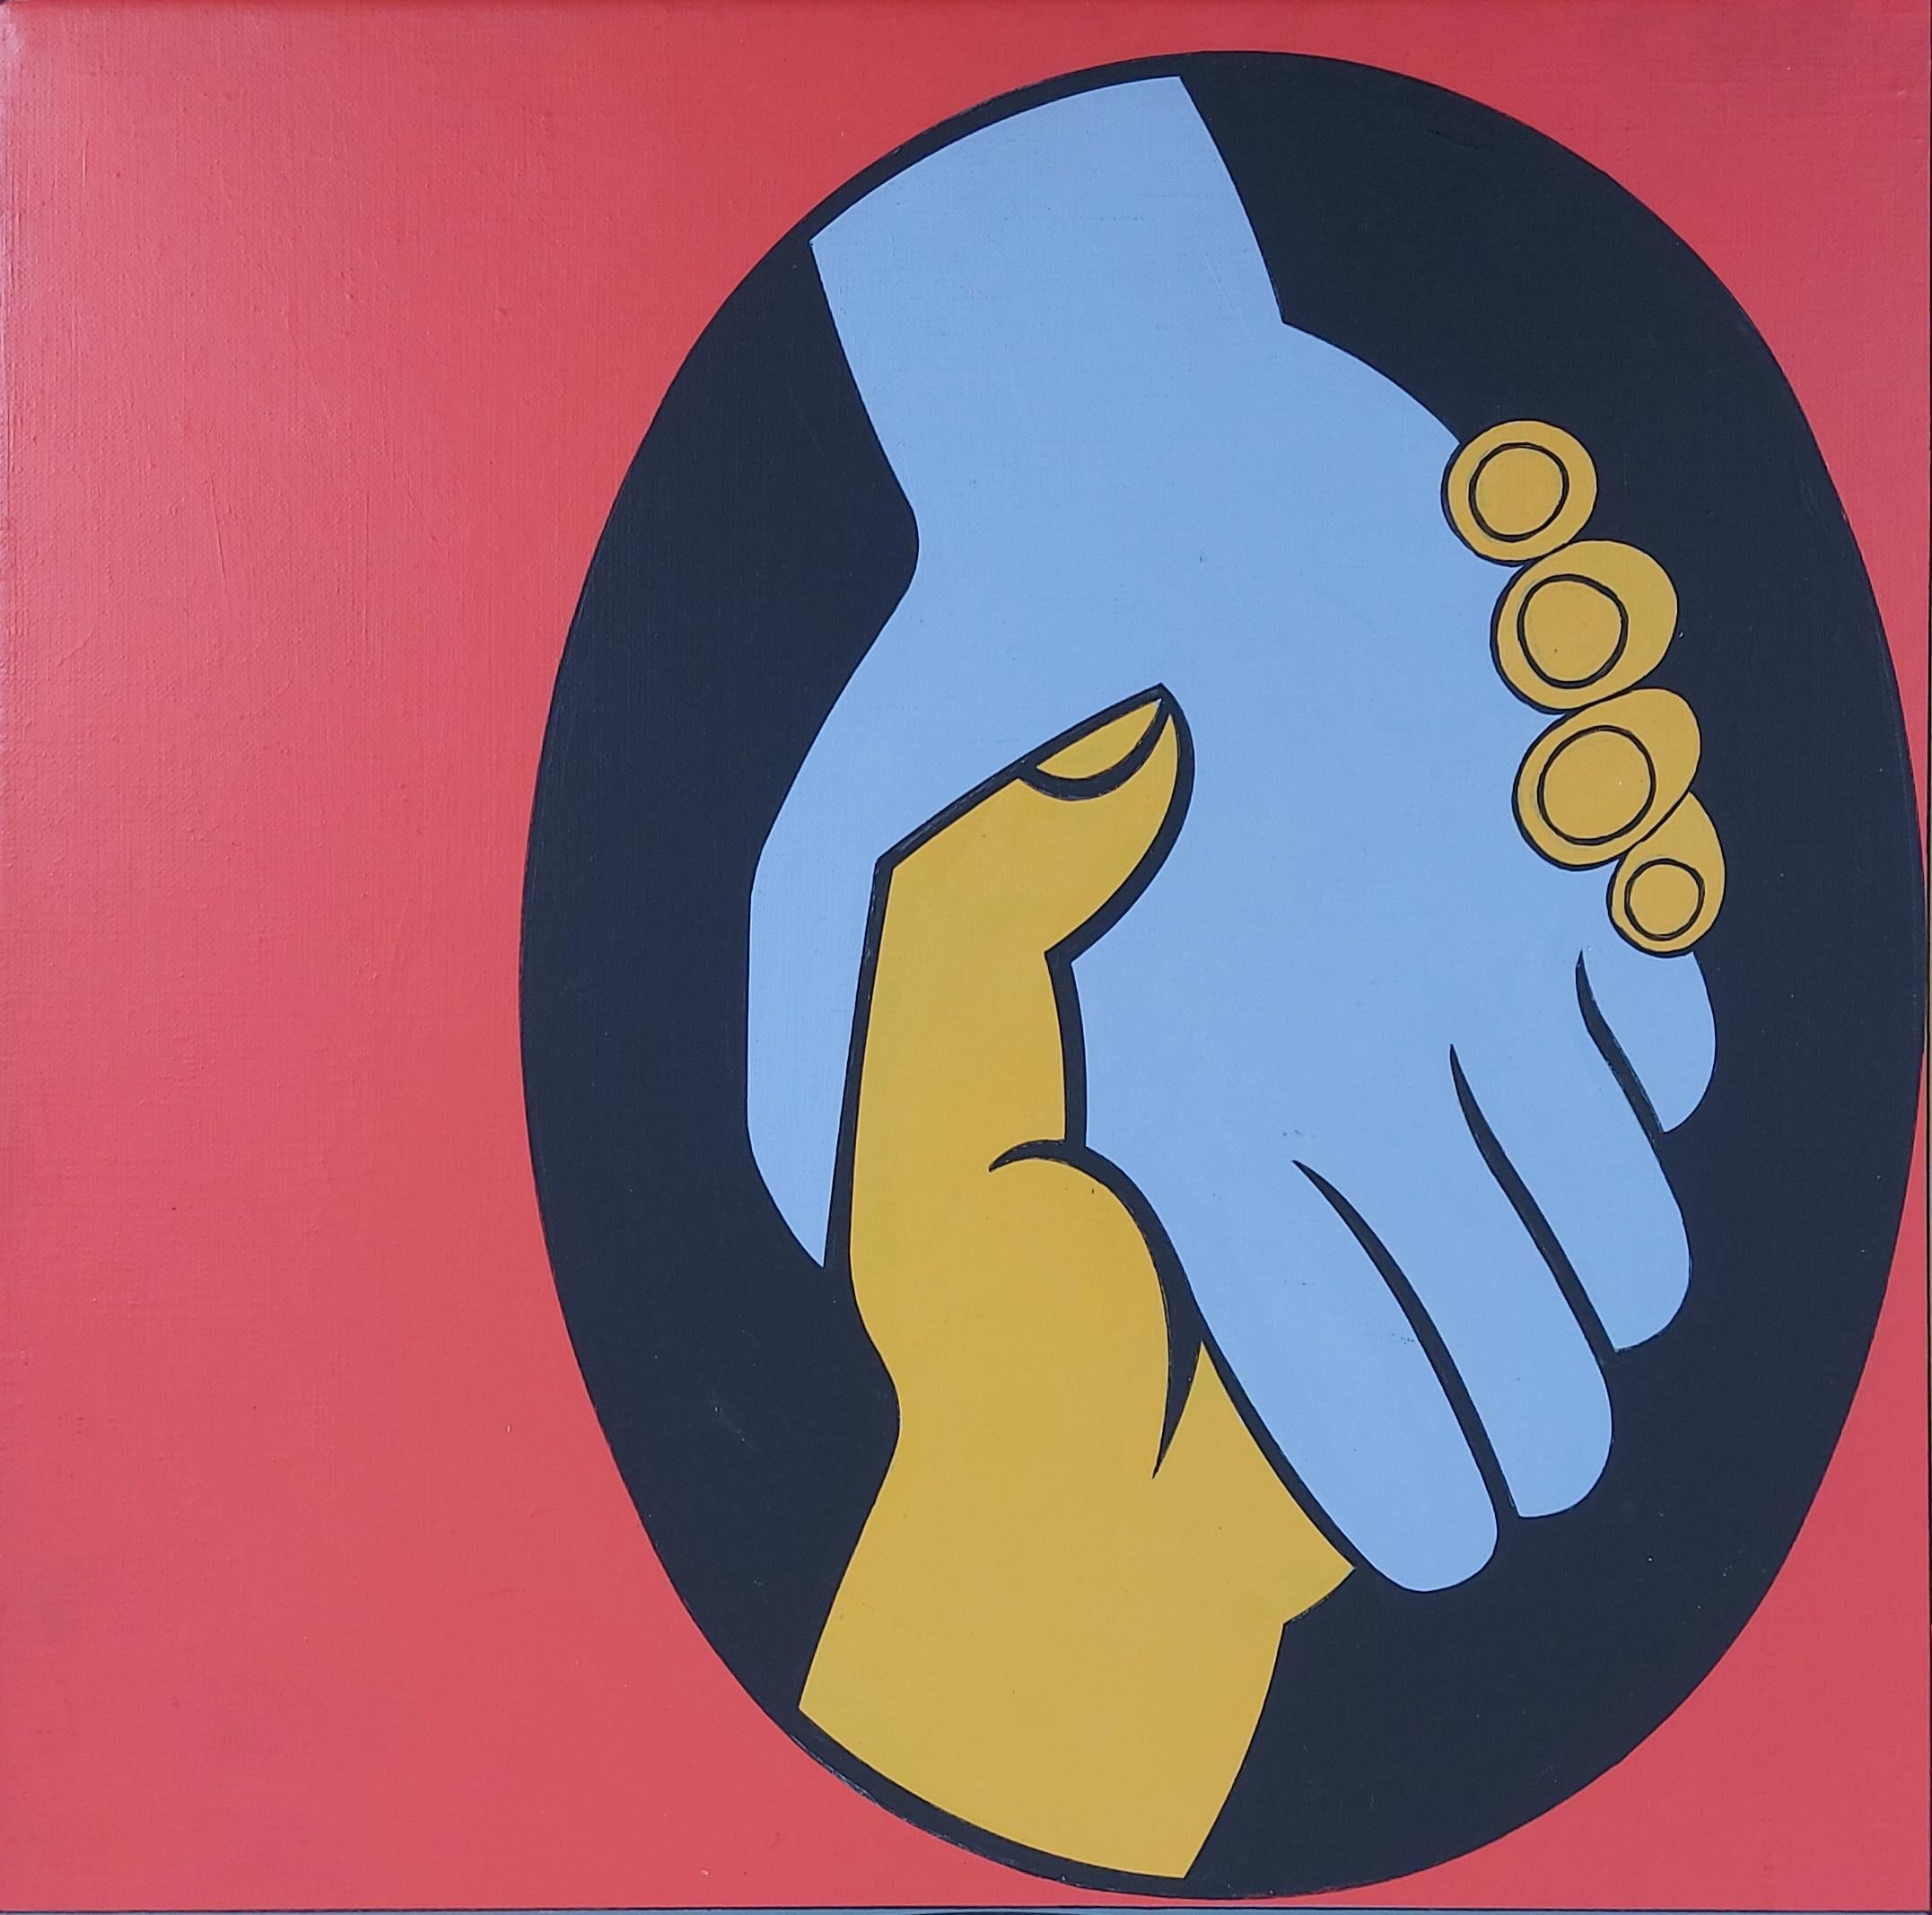 Victor VASARELY
Weltfreundschaft (Fay Koez), 1980

Original-Acrylgemälde
Handsigniert in der unteren Mitte
Signiert, betitelt, datiert und auf der Rückseite aufgeführt
Auf Leinwand 60 x 60 cm (ca. 24 x 24 inch)
Präsentiert in goldenem Holzrahmen 75